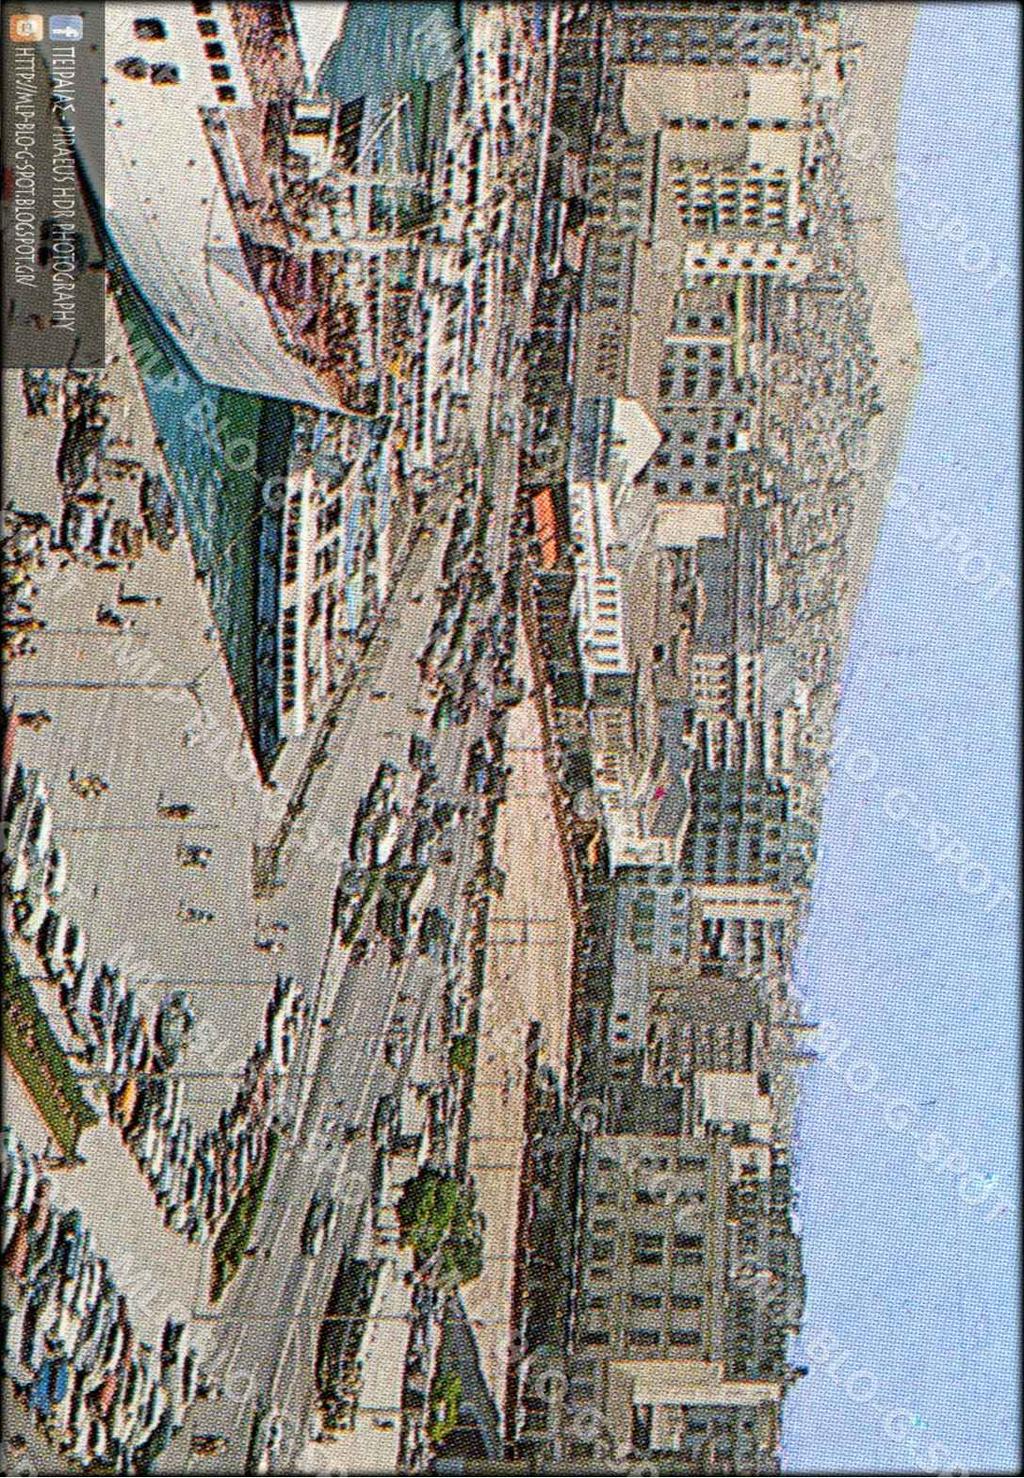 ΔΕΥΤΕΡΗ ΦΑΣΗ ΤΟ ΤΕΤΡΑΓΩΝΟ ΤΗΣ ΑΓΟΡΑΣ Μετά την κατεδάφιση του Ρολογιού και της Κεντρικής Δημοτικής Αγοράς του Πειραιώς το 1968, ξεκίνησε η οικοδόμηση του Εμπορικού Πύργου το 1972.